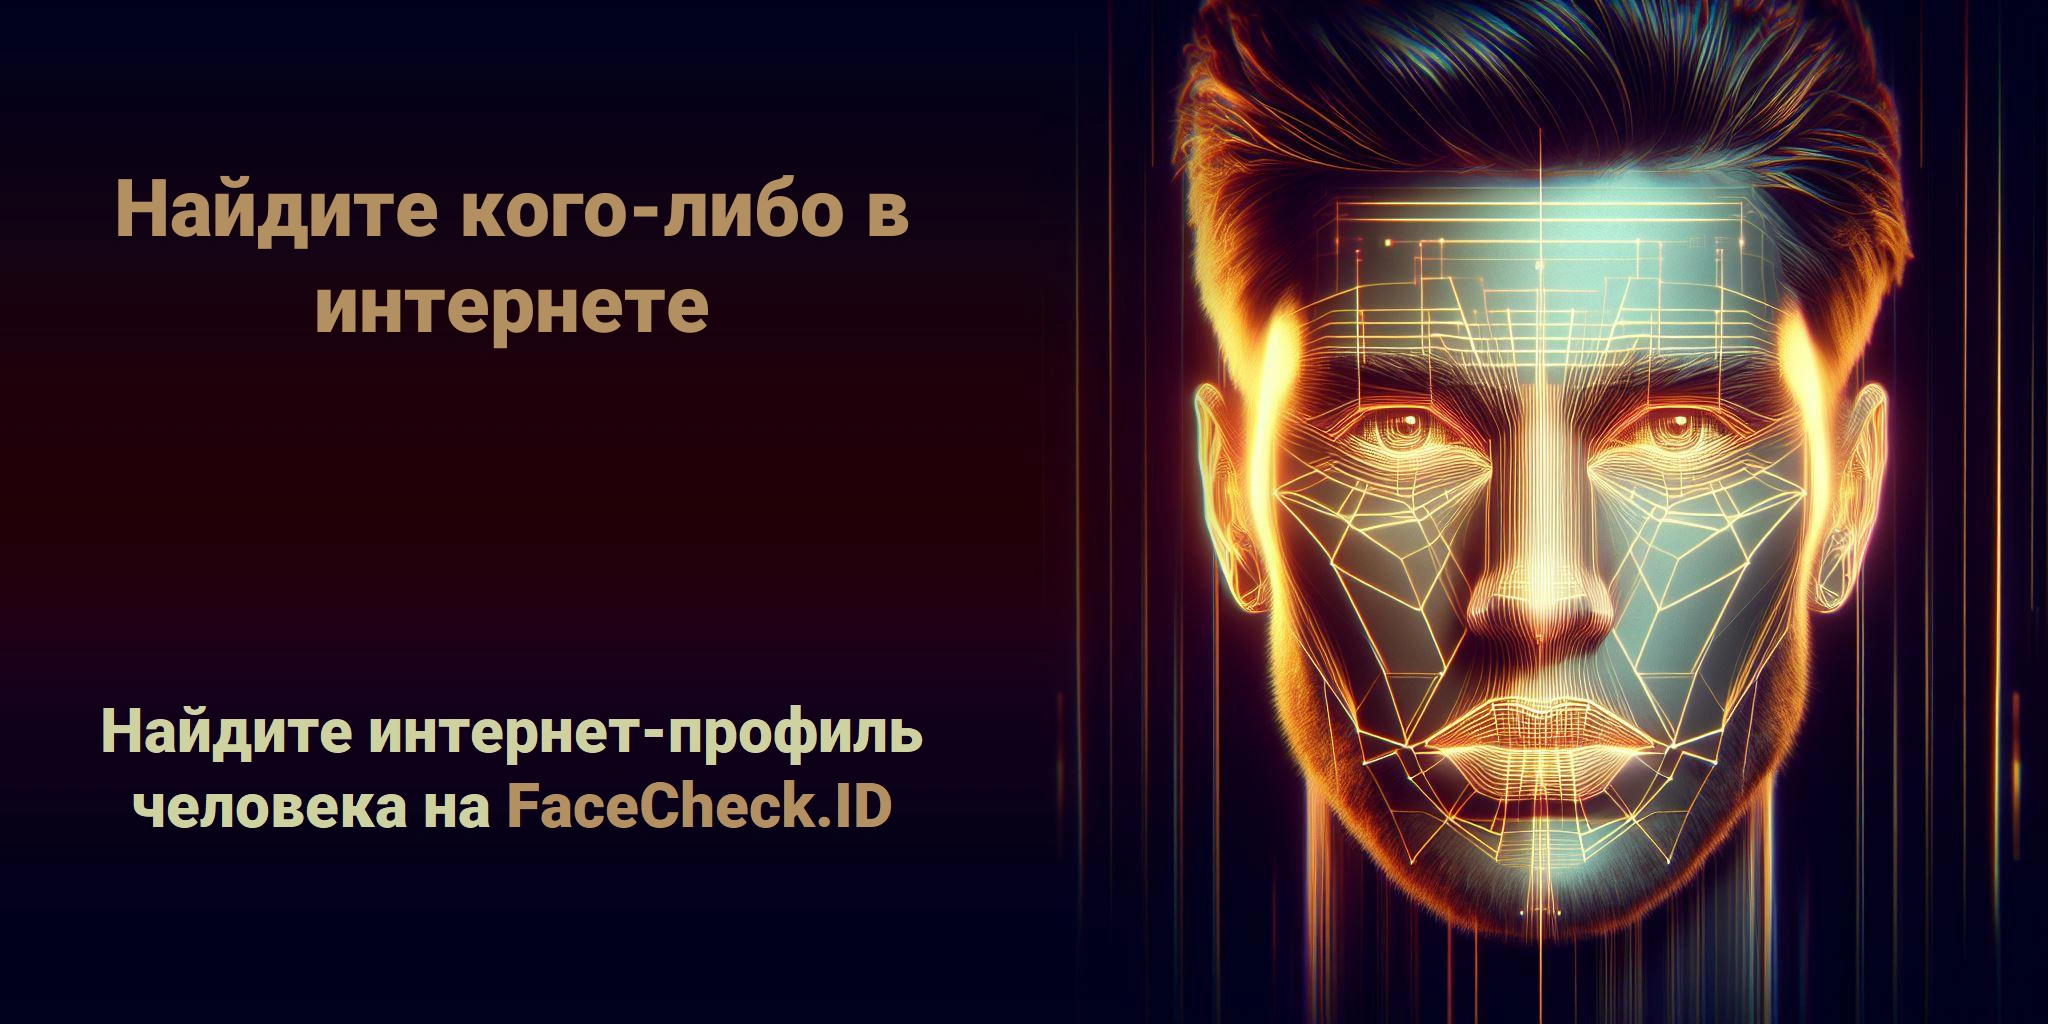 Найдите кого-либо в интернете Найдите интернет-профиль человека на FaceCheck.ID